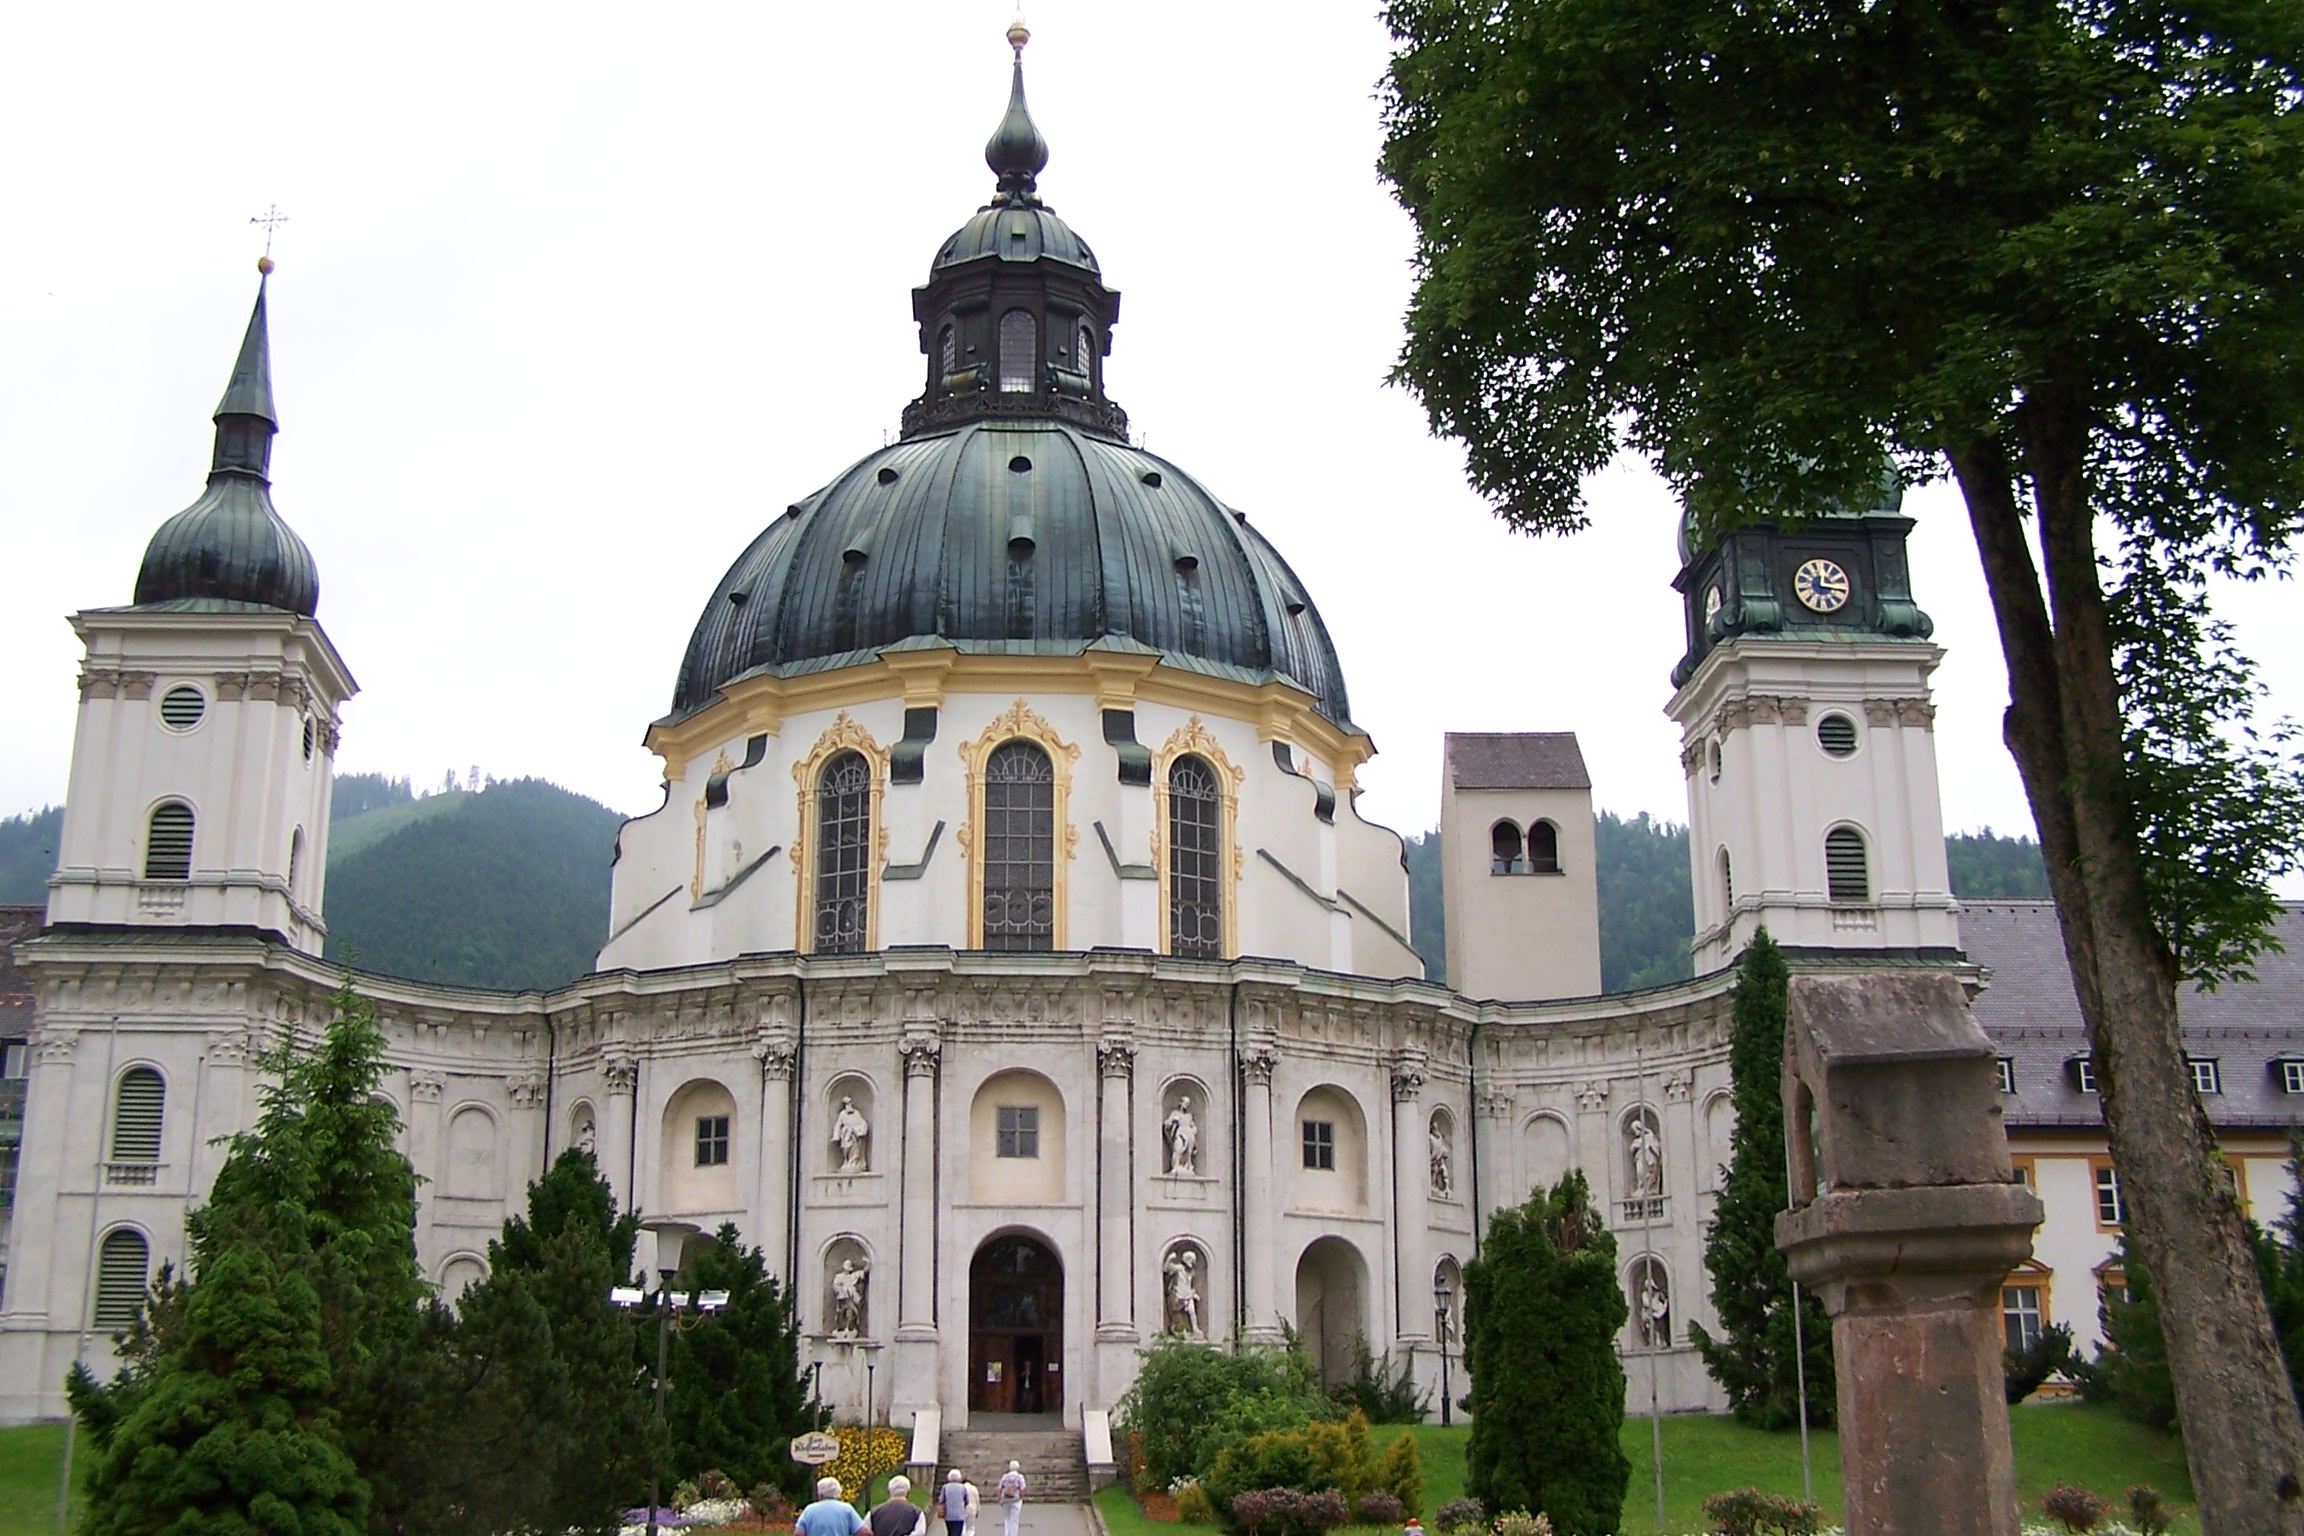 Монастырь этталь — достопримечательность баварии недалеко от мюнхена